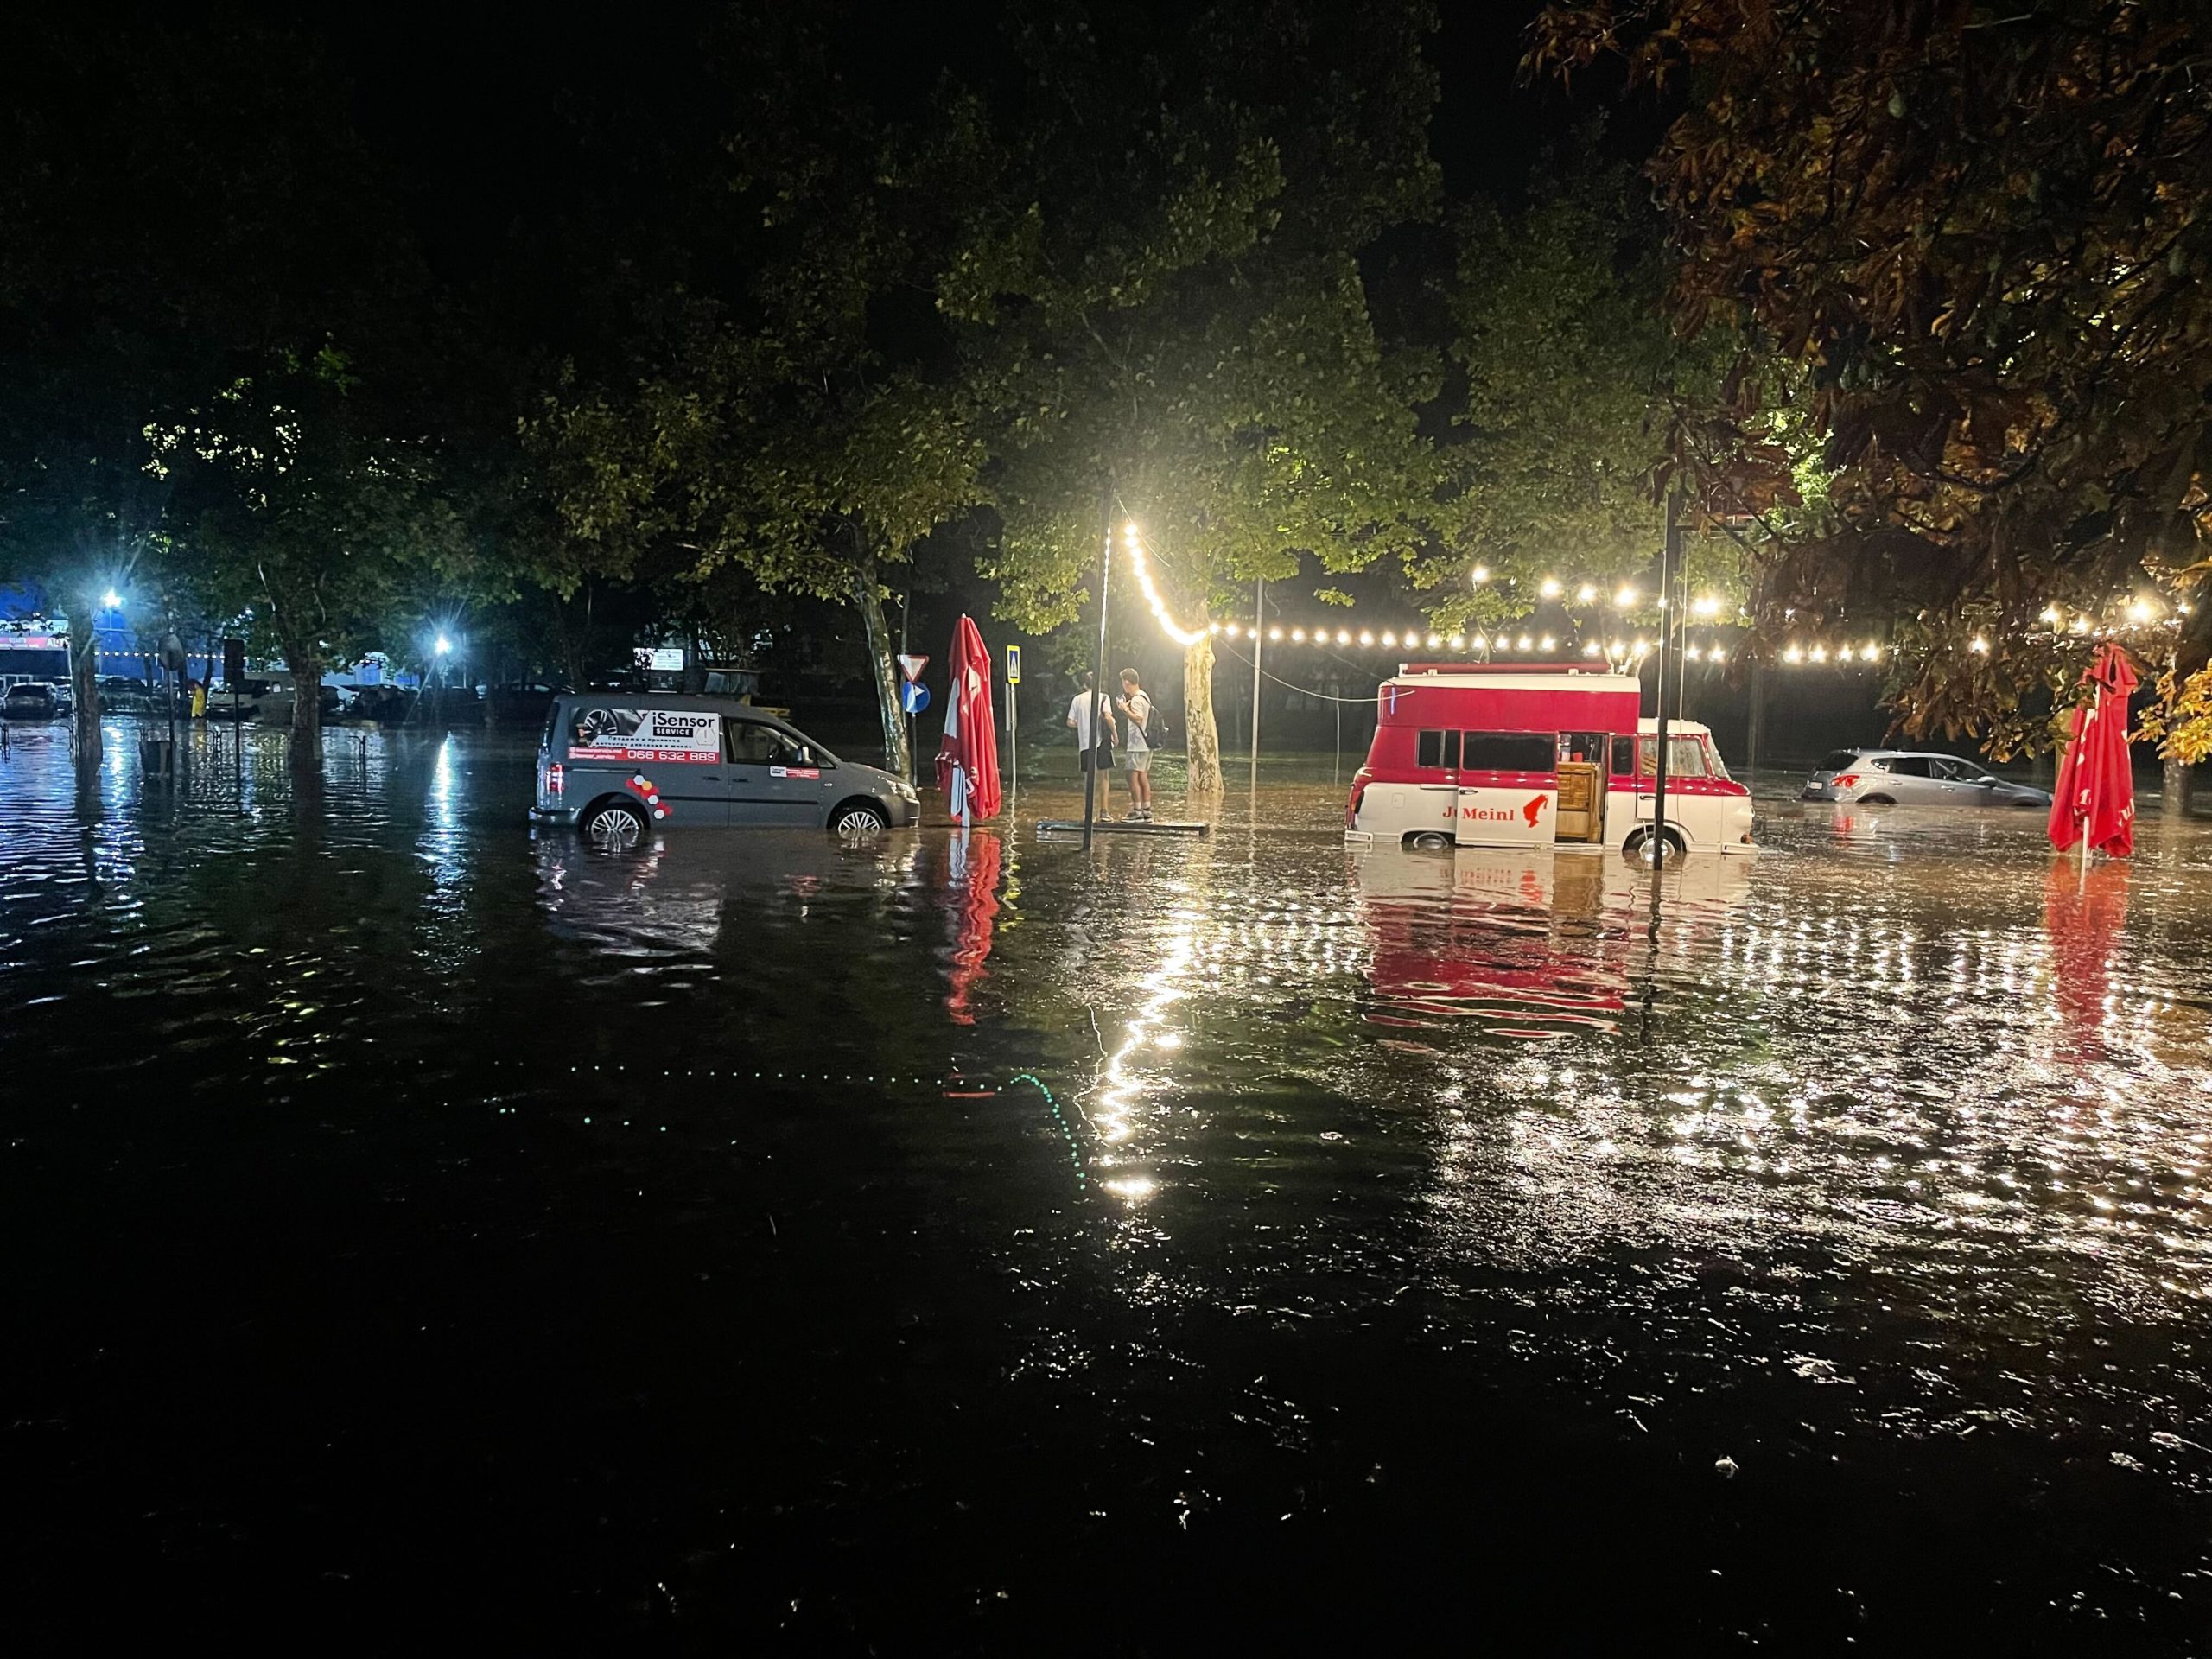 (ВИДЕО) На Кишинев обрушился мощный ливень. Улицы затопило, Чебан призвал оставаться дома